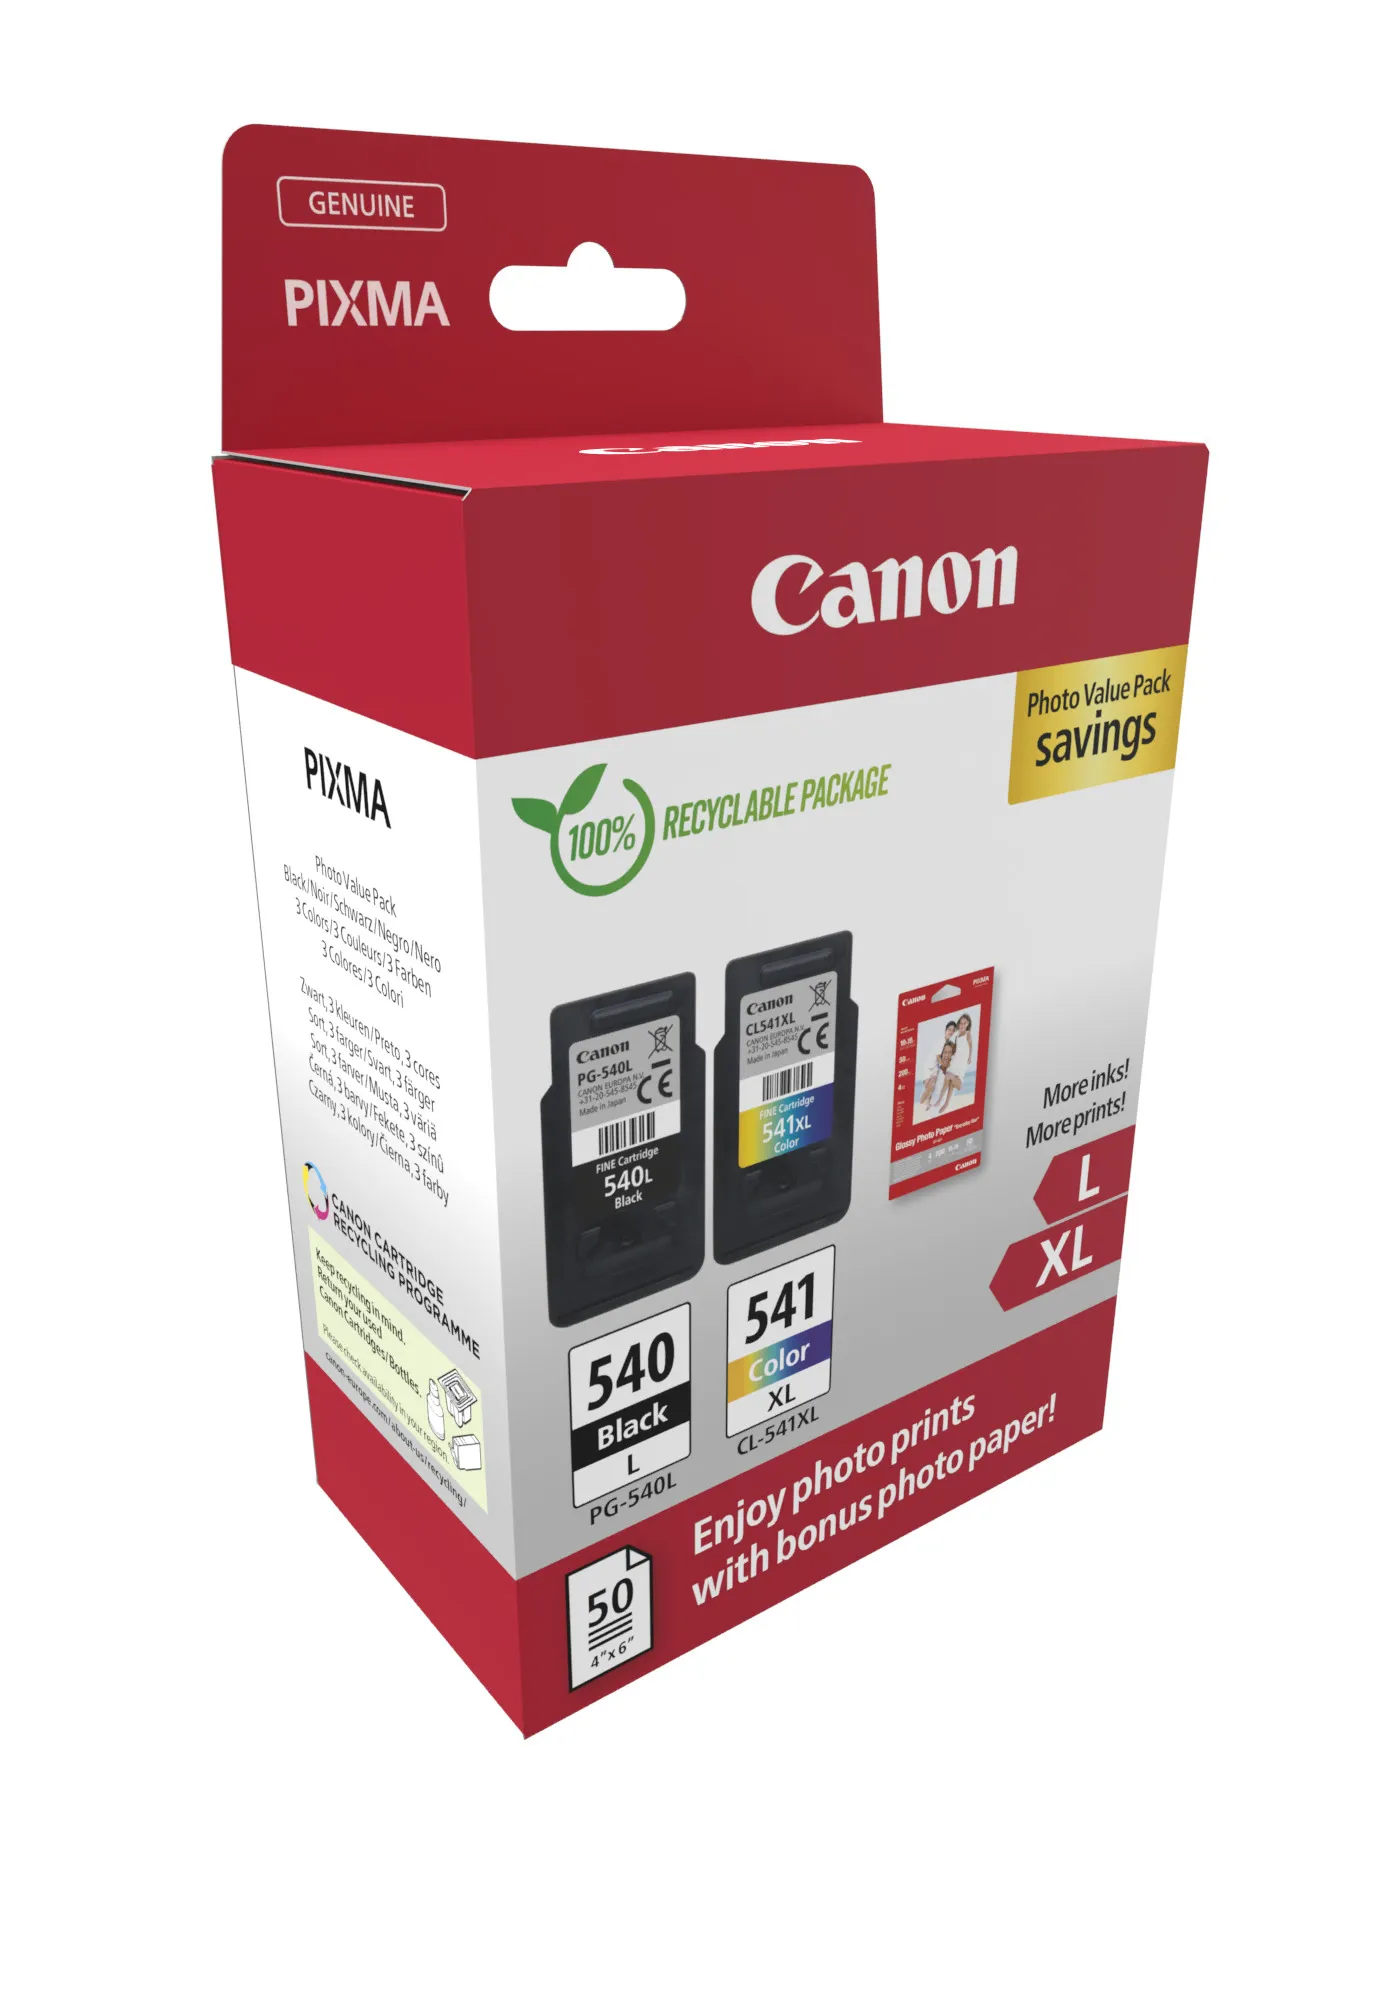 Vente CANON PHOTO PACK PG-540L/CL-541XL Ink Cartridge Canon au meilleur prix - visuel 2